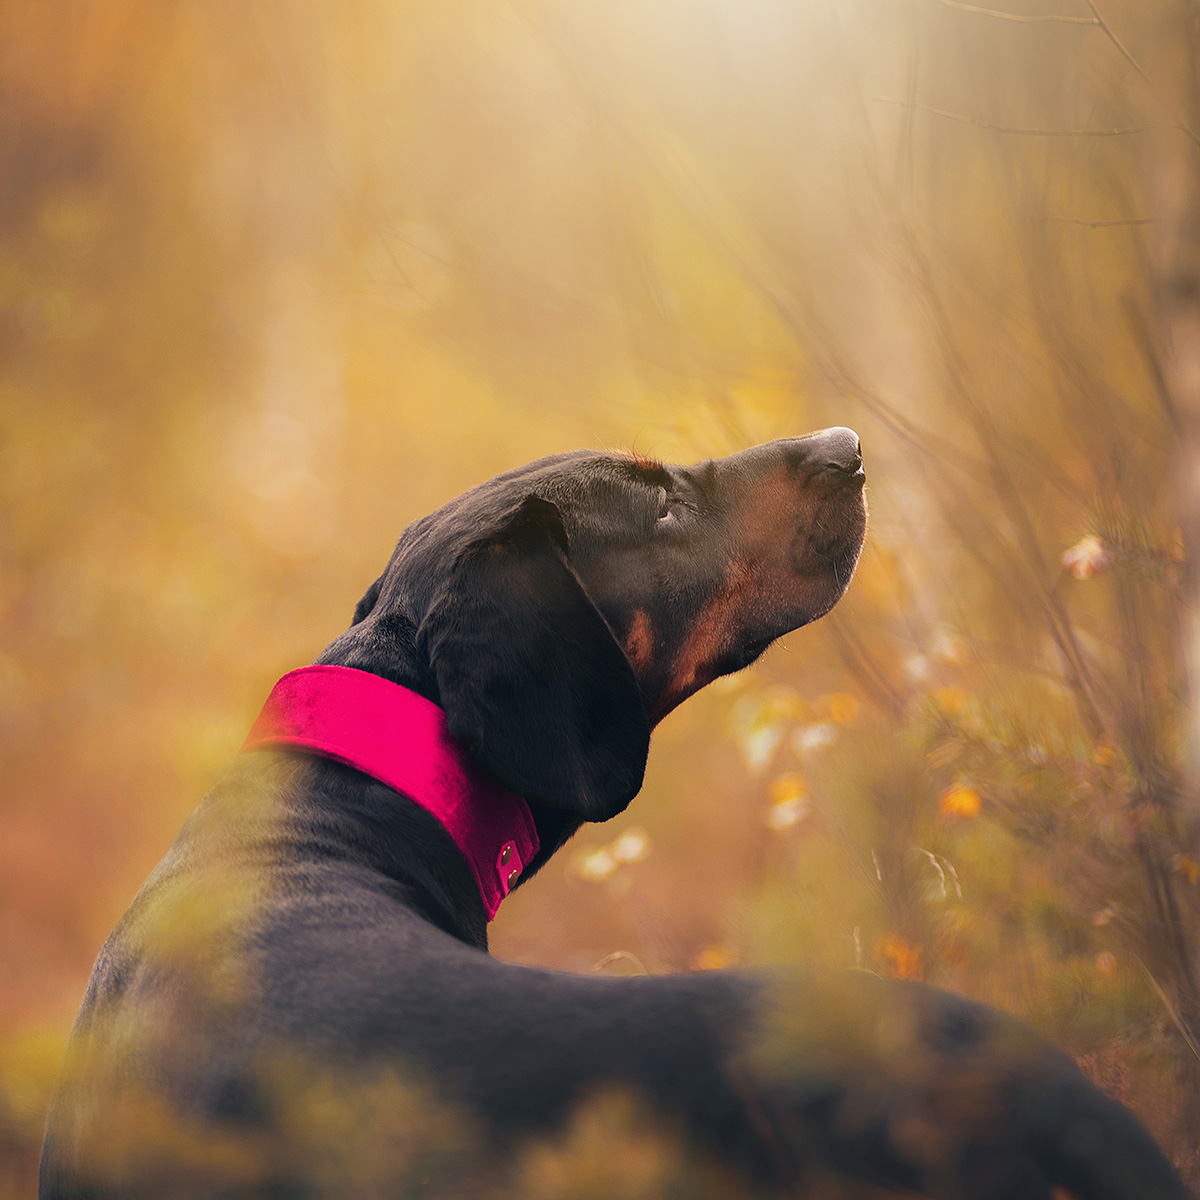 Obroża dla psa z błyszczącego weluru, zapinana na oryginalny Biothane w kolorze passion pink